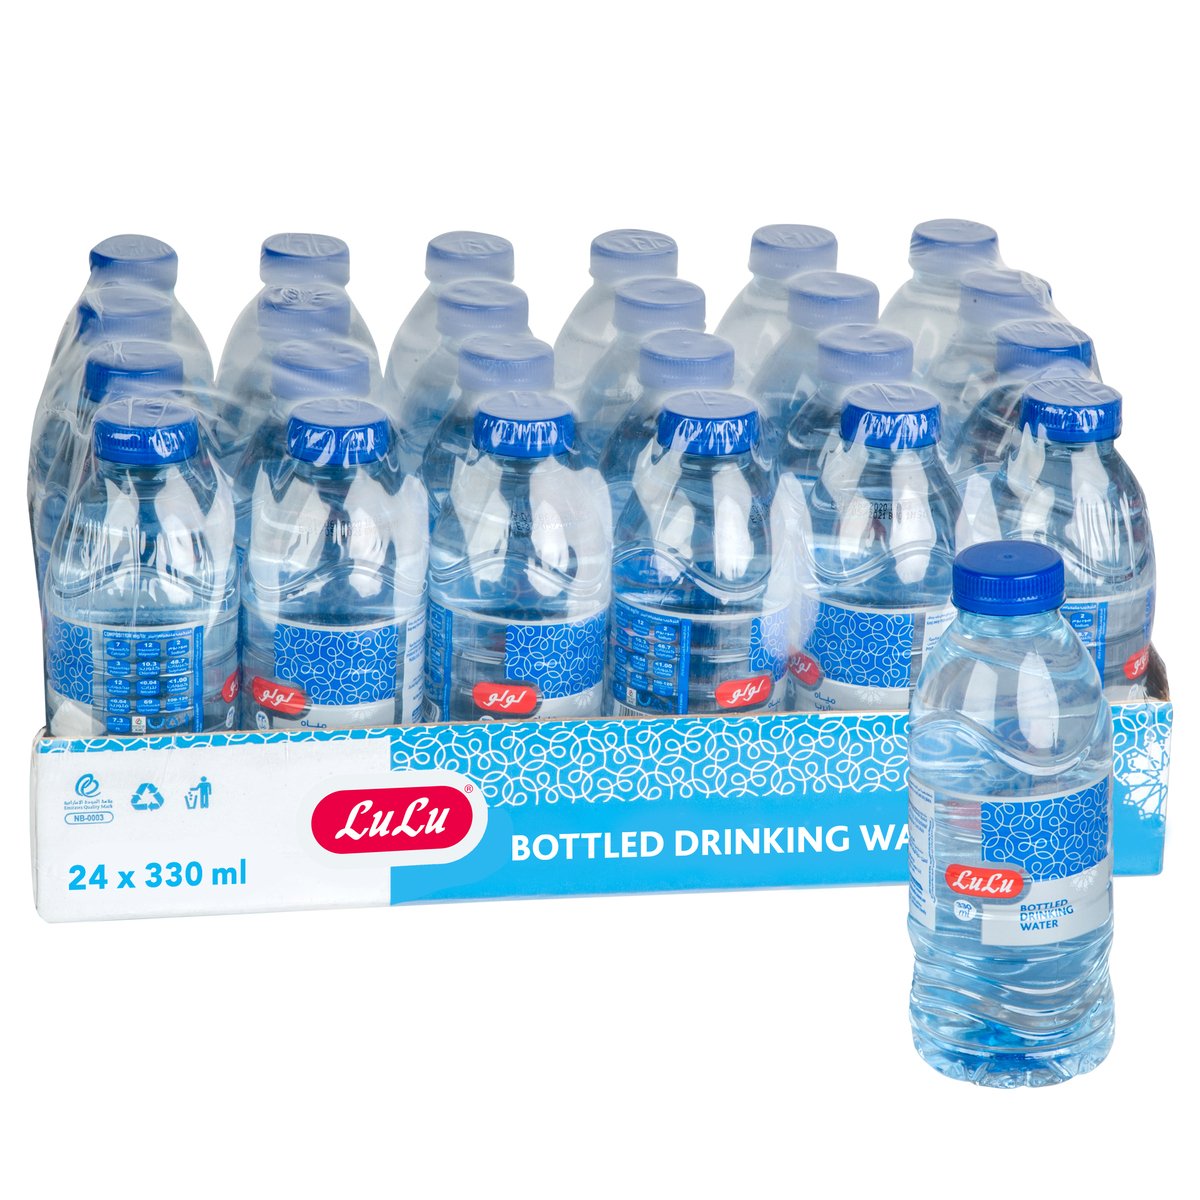 Lulu Bottled Drinking Water 24 x 330 ml